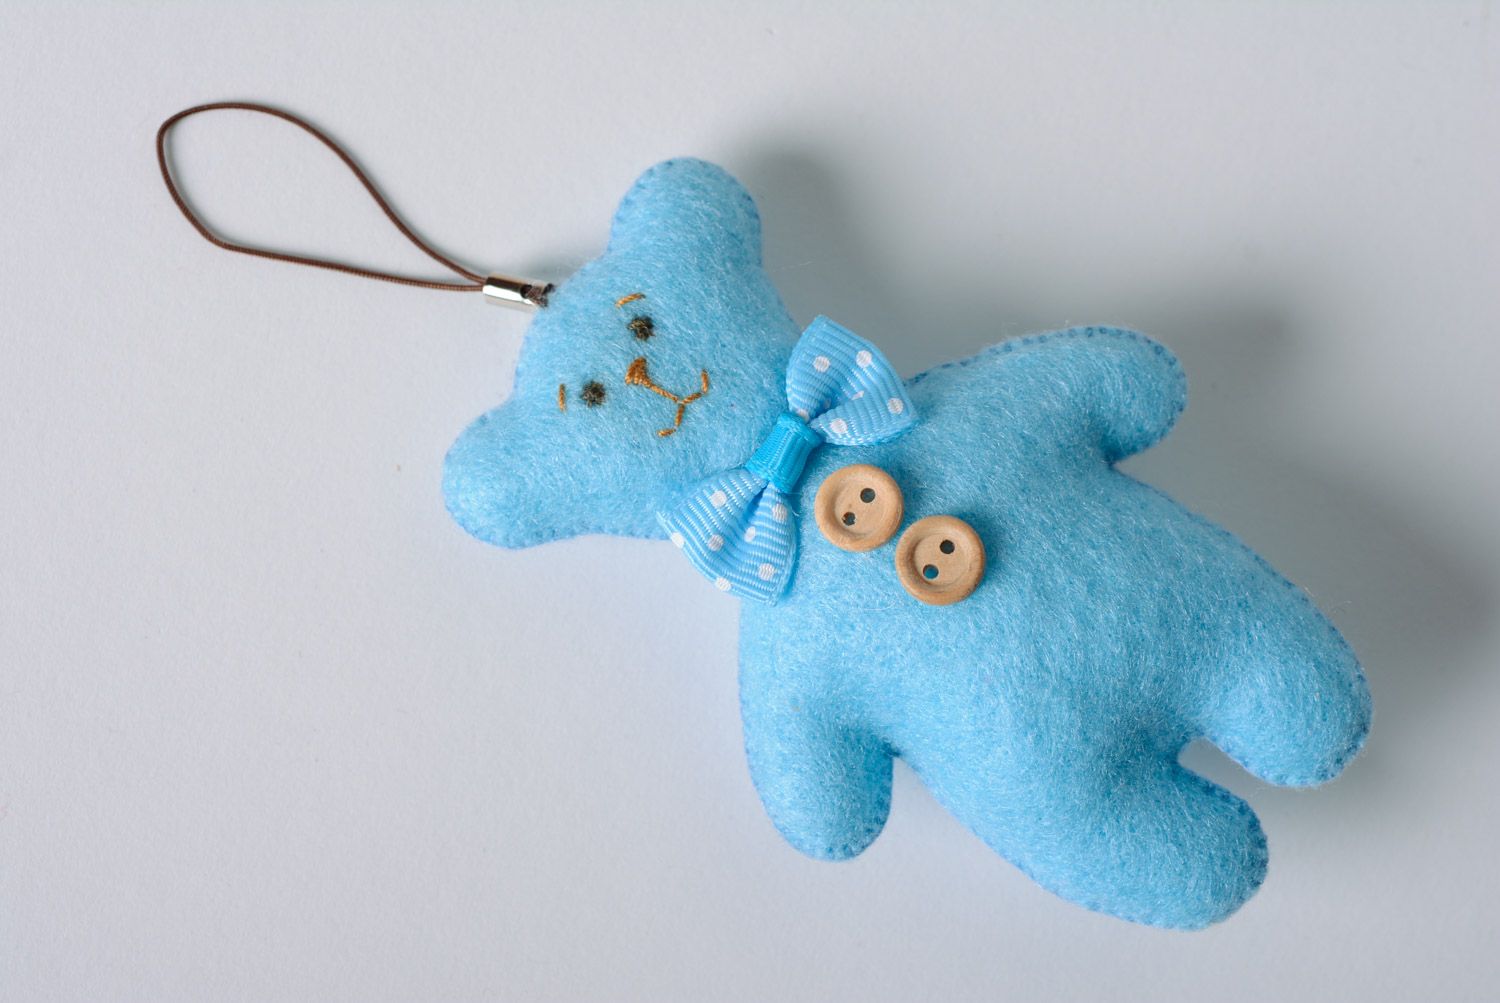 Брелок в виде мишки из фетра игрушка на ключи или сумку голубая ручной работы фото 1